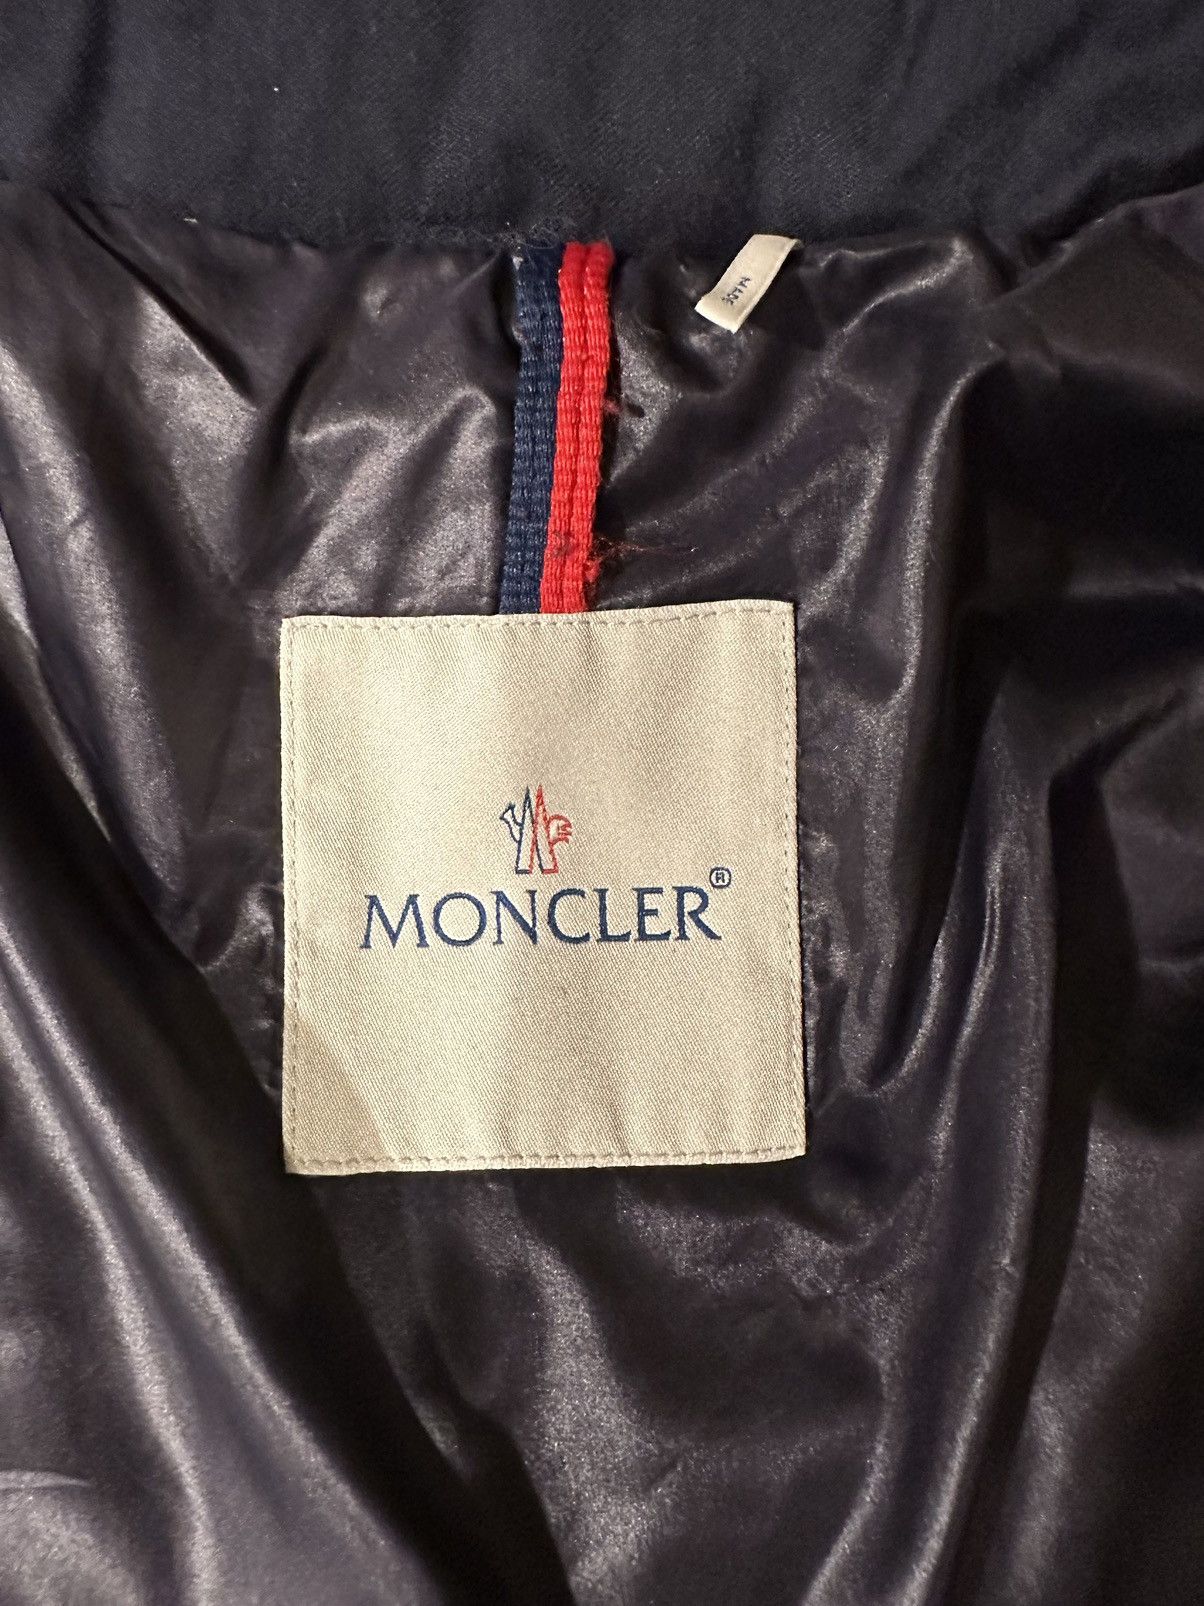 Moncler Moncler Montgenevre Short Down Jacket Size US M / EU 48-50 / 2 - 4 Thumbnail